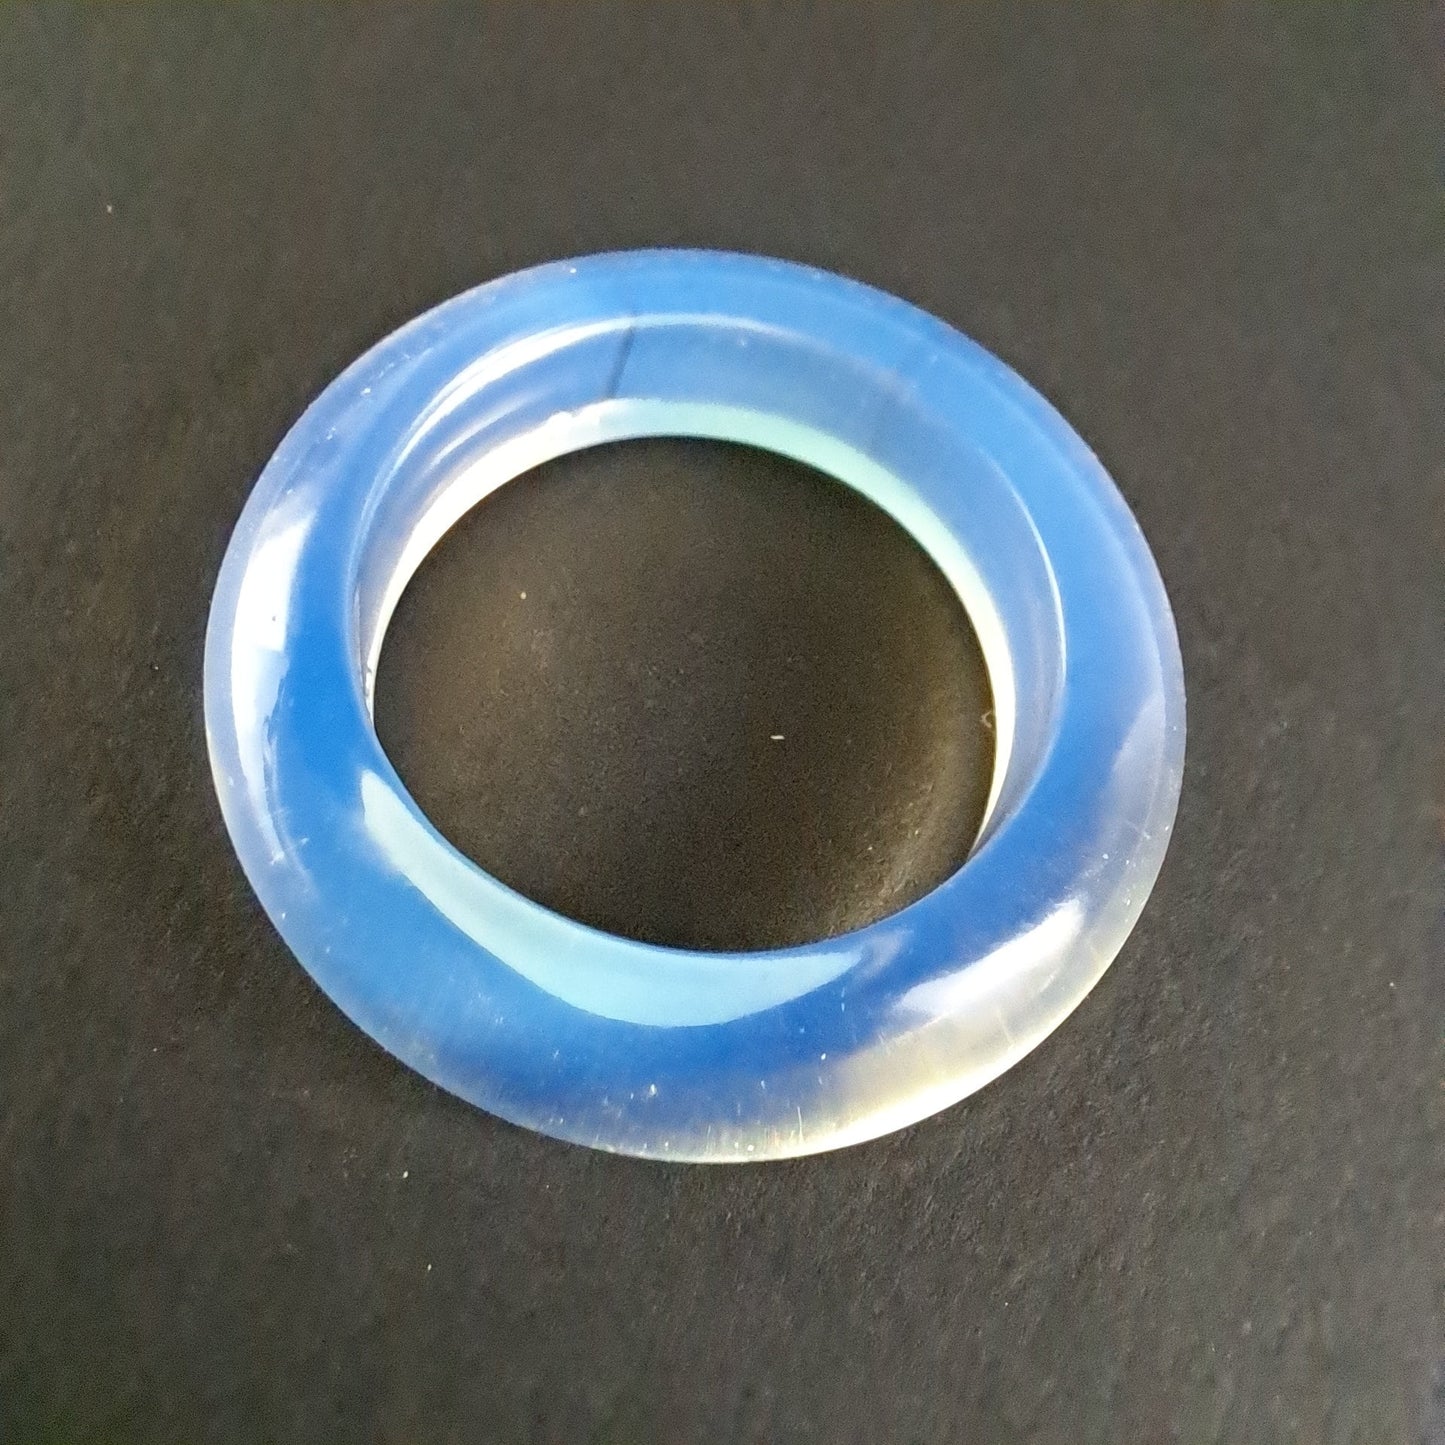 Single Opalite Glass Dread Bead - 18mm bead hole